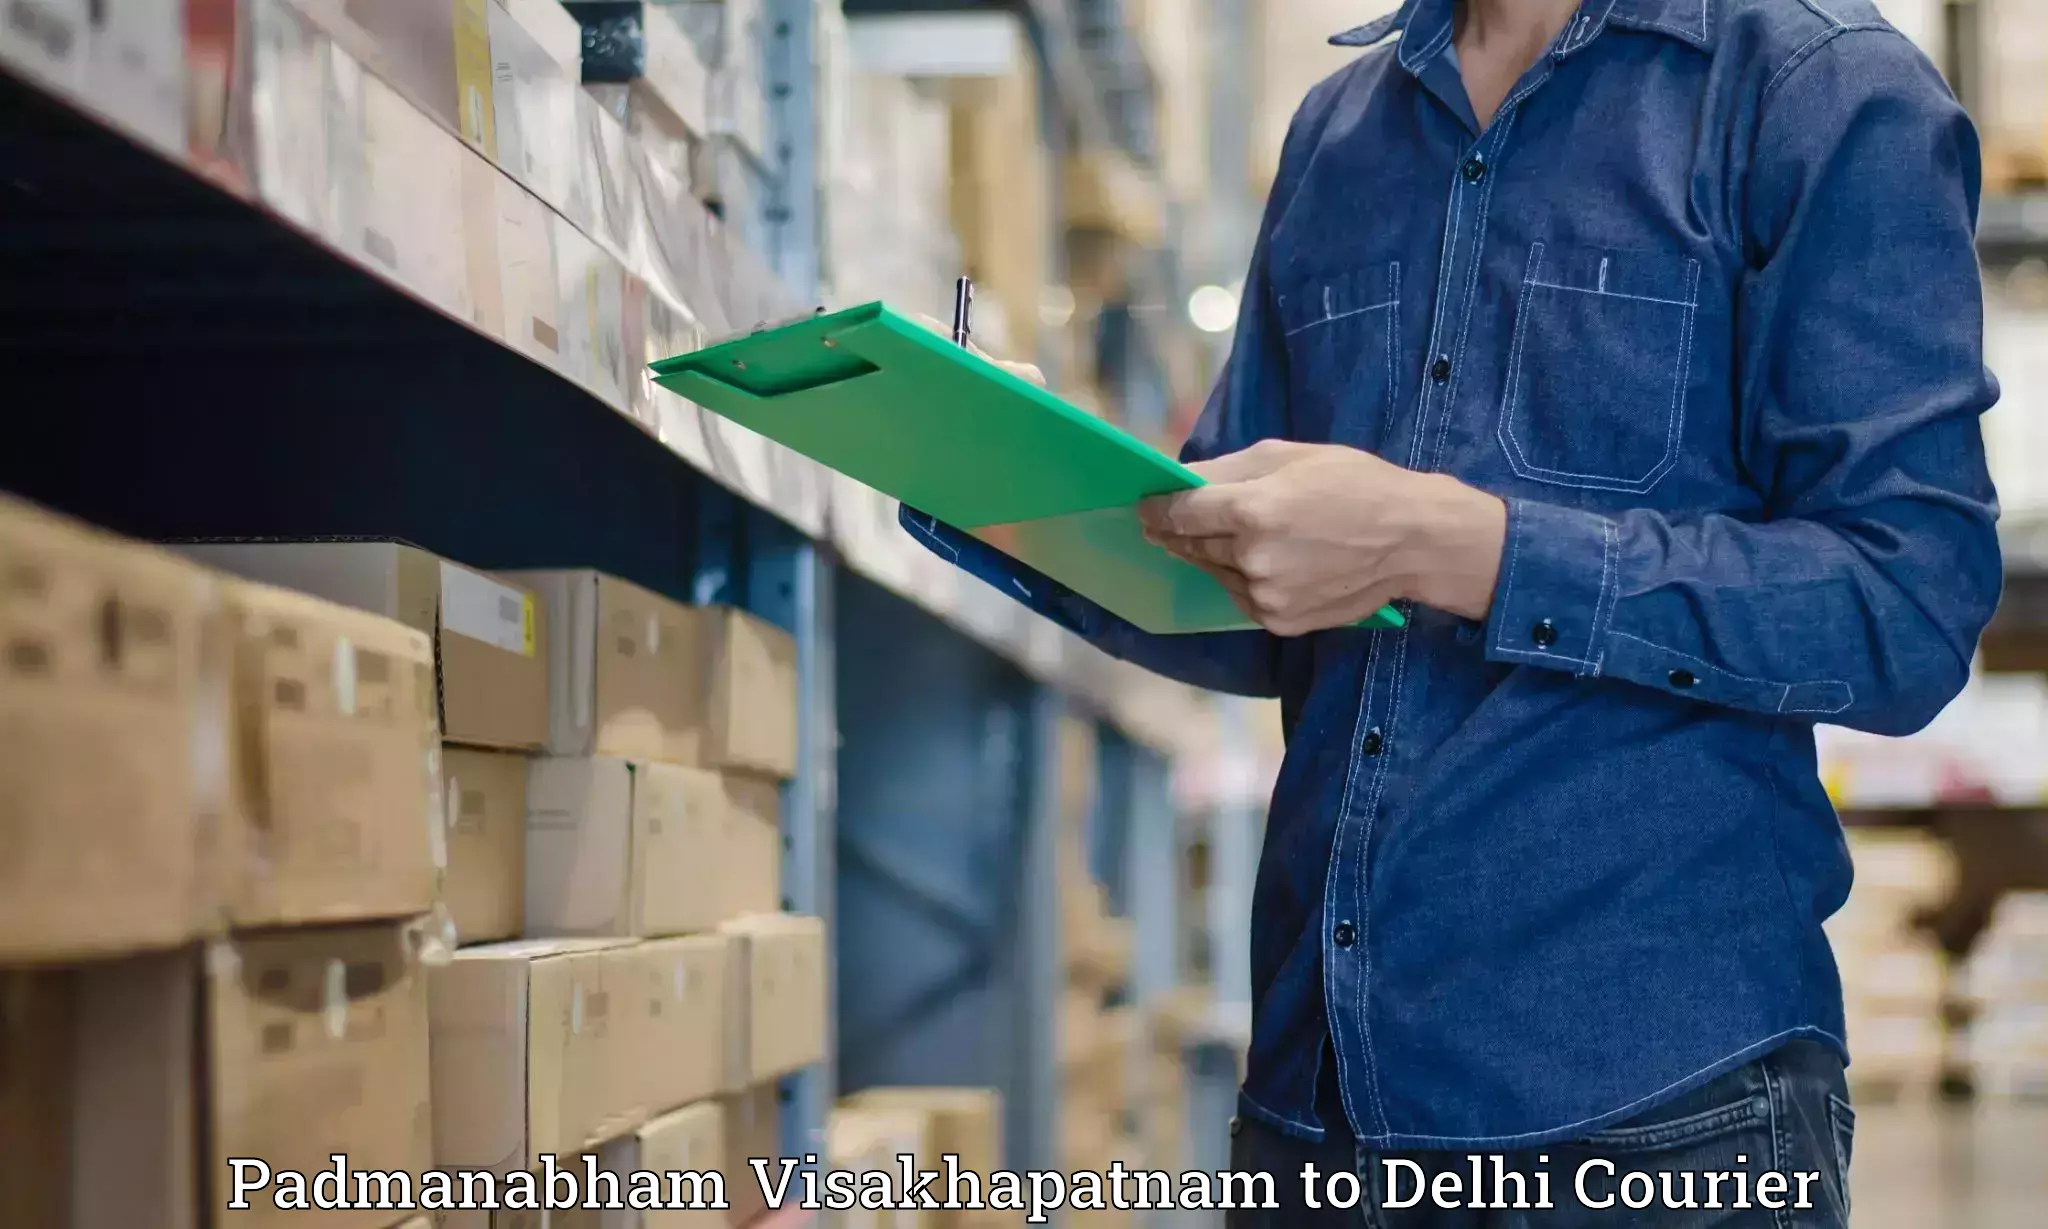 Holiday shipping services Padmanabham Visakhapatnam to Jamia Millia Islamia New Delhi